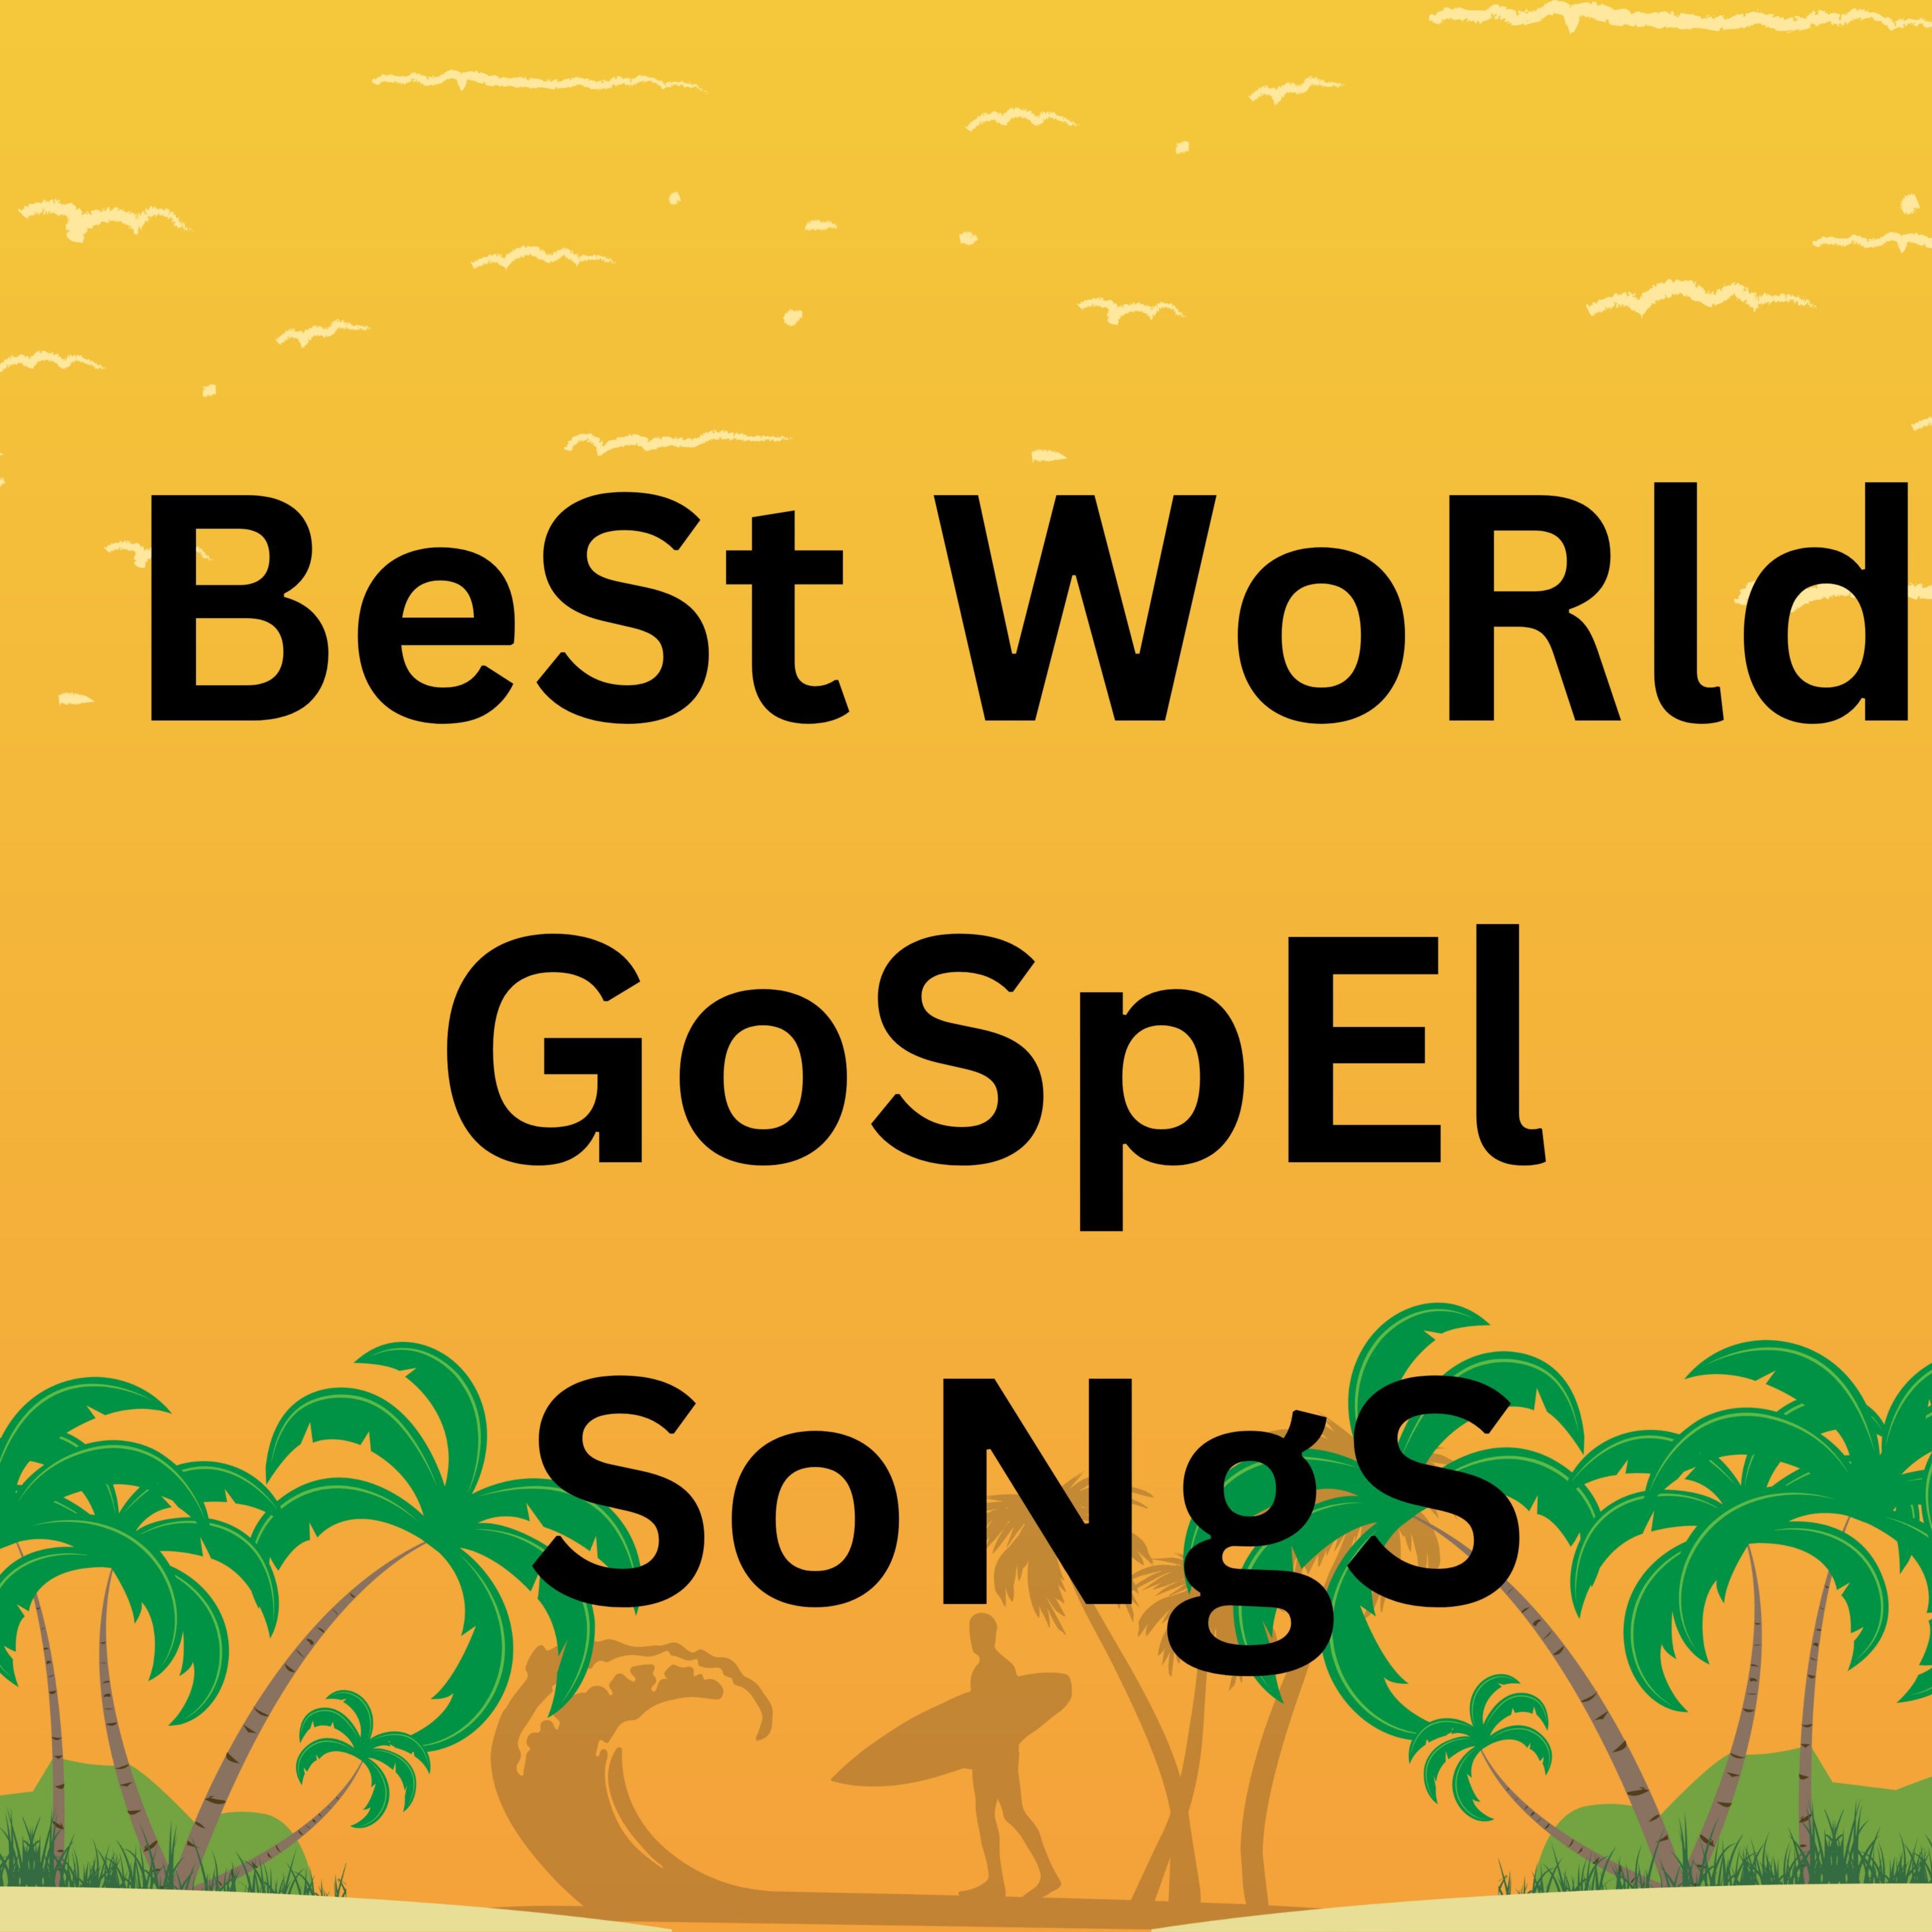 Best World Gospel Songs Playlist